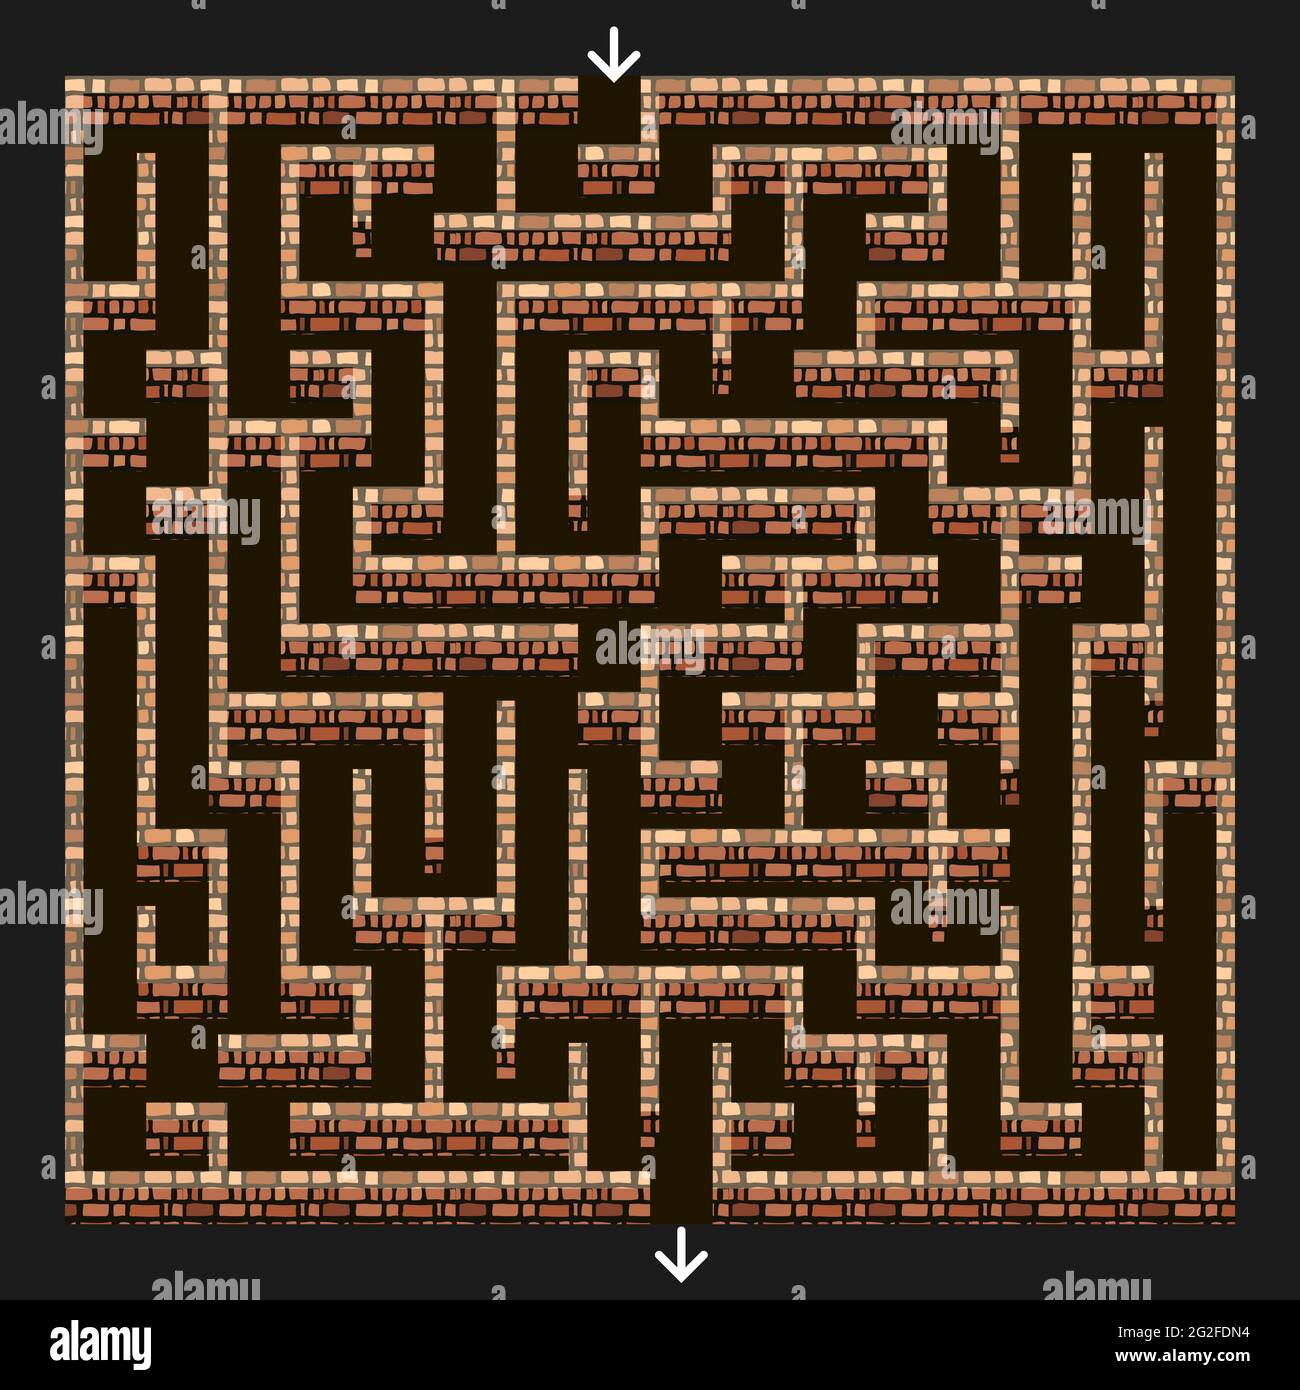 Labirinto 3d. Labirinto con muri in pietra di mattoni per puzzle o dungeon fuga di livello di gioco. Vista dall'alto verso il basso. Illustrazione vettoriale Illustrazione Vettoriale